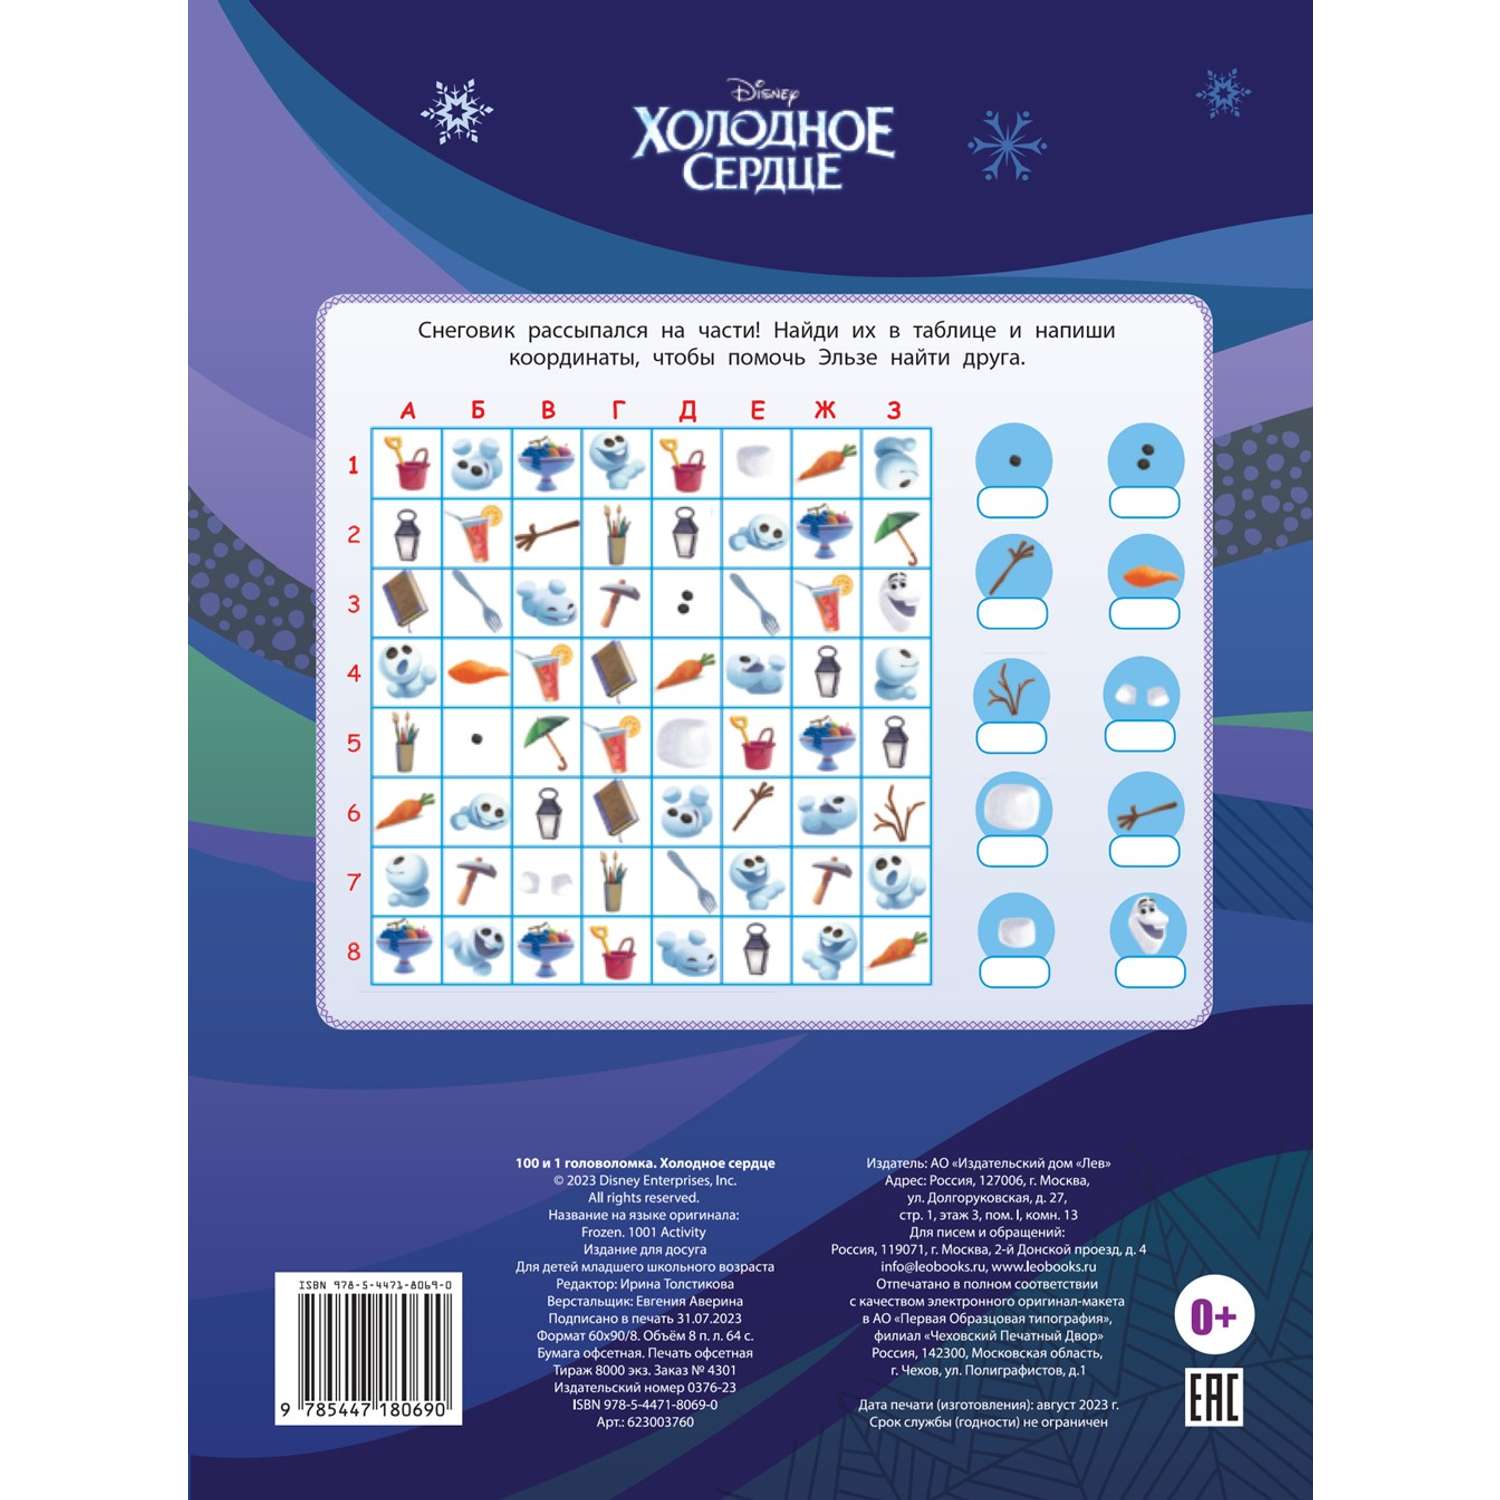 Комплект Disney Холодное сердце 100 и 1 головоломка + Многоразовые наклейки - фото 8